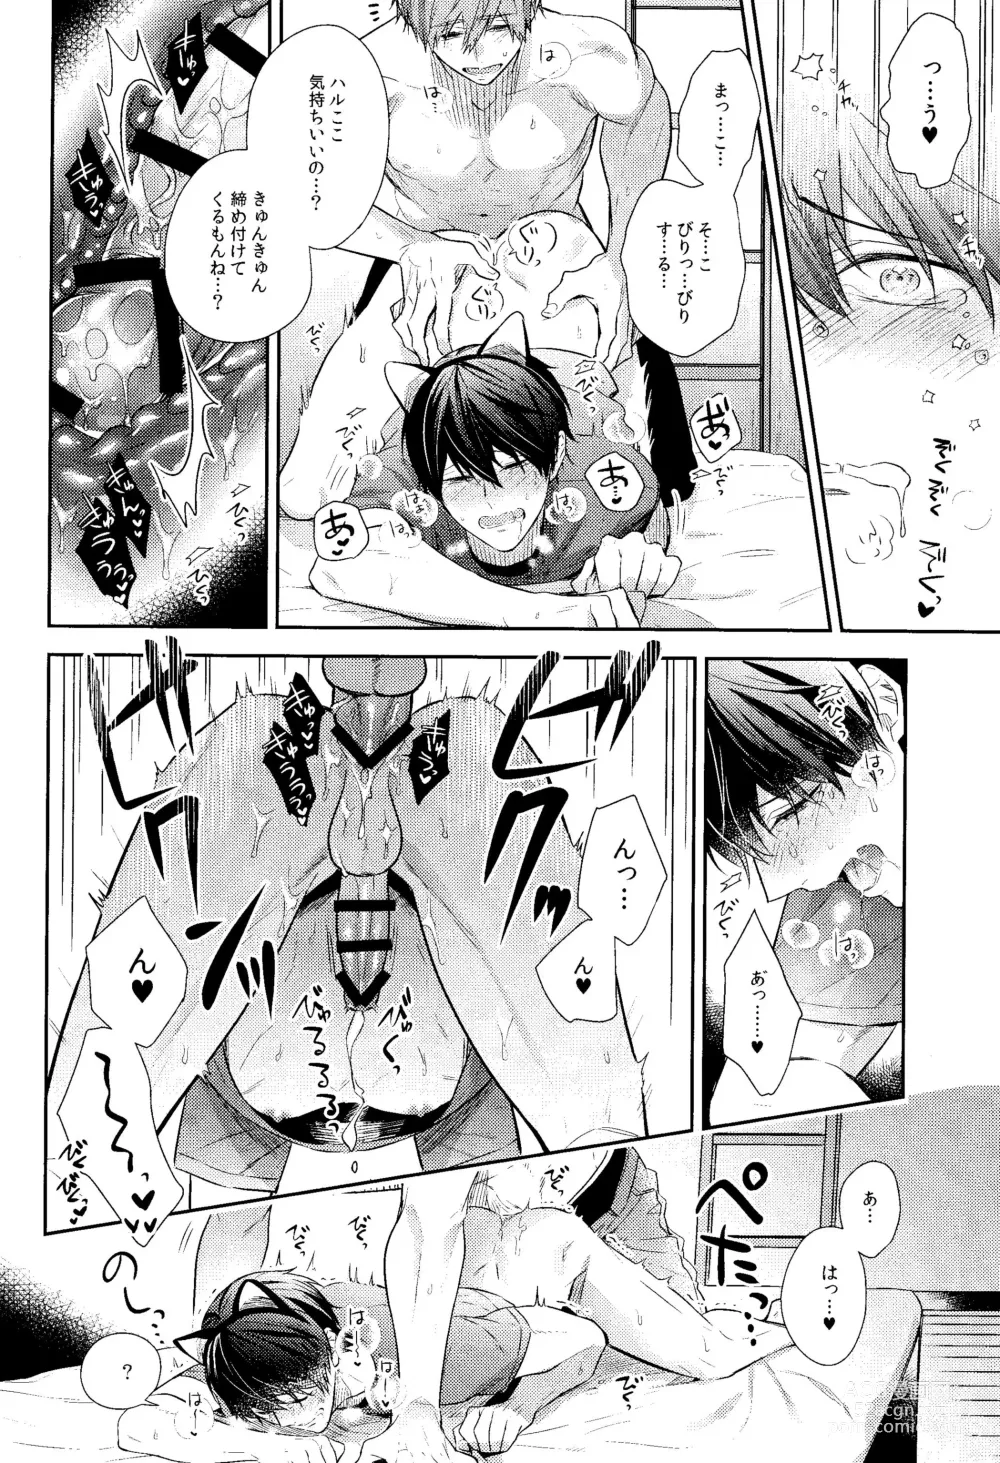 Page 23 of doujinshi Yakimochiyaki no Uchi no Neko